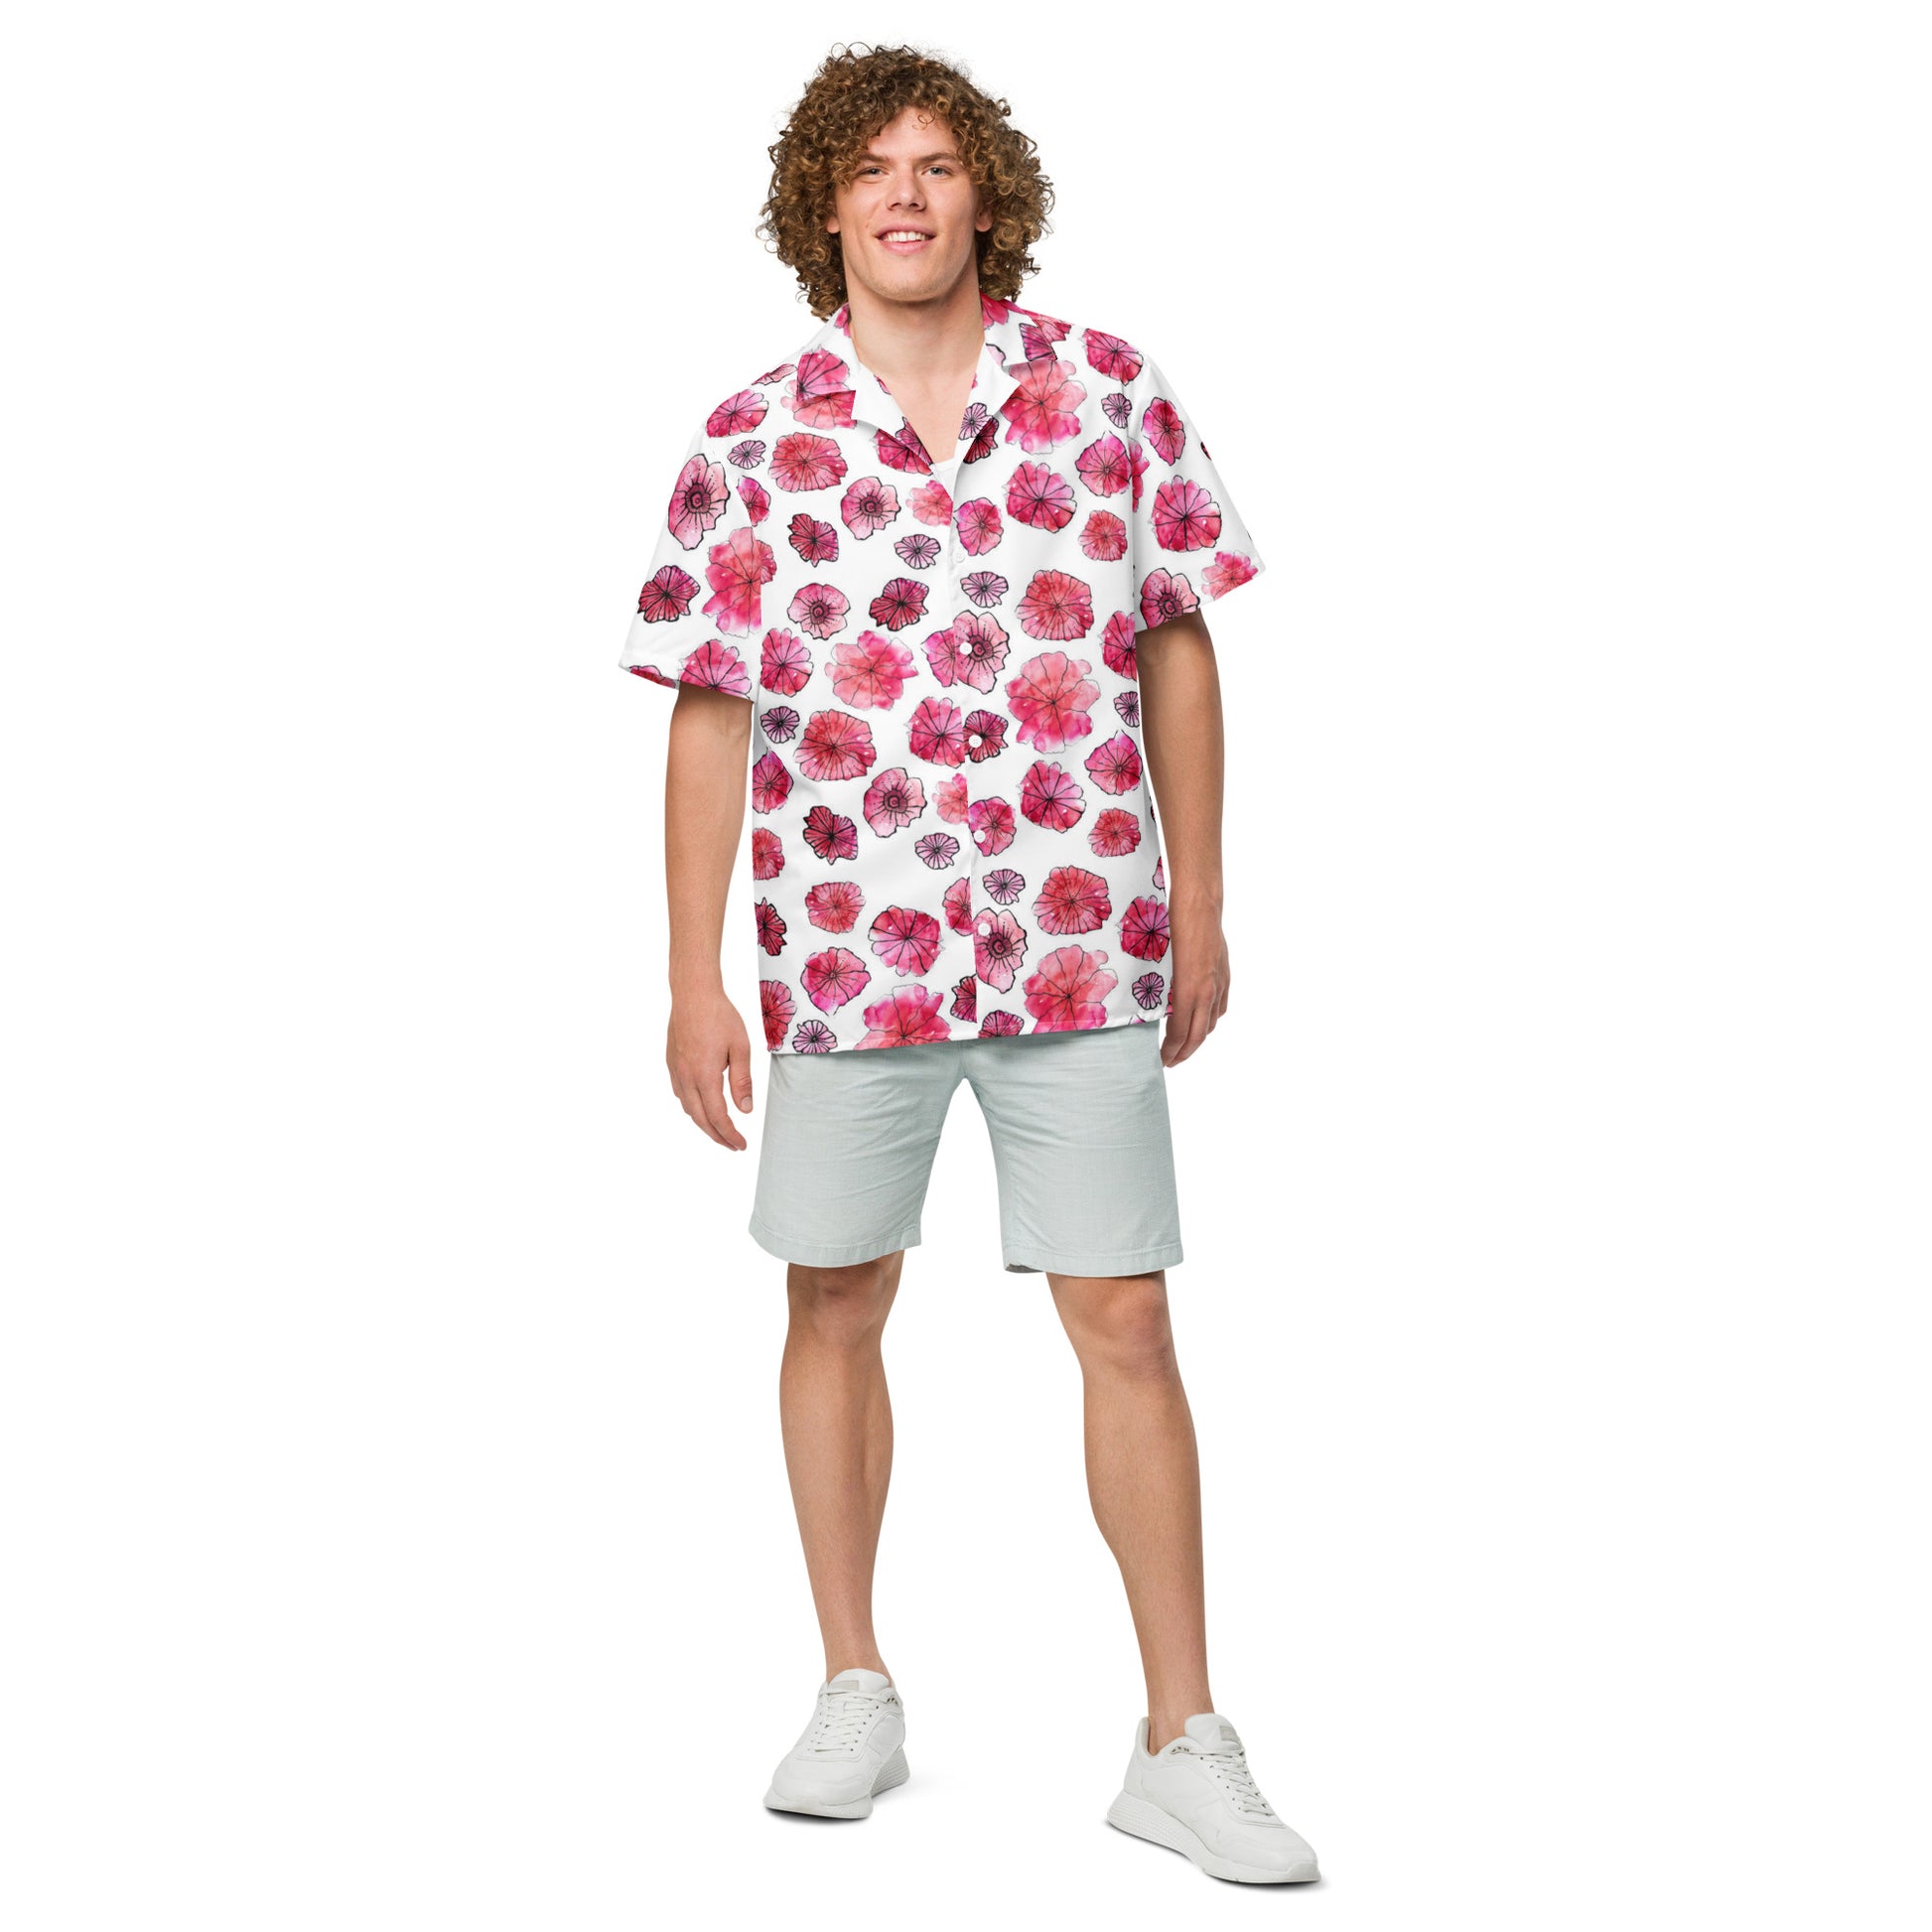 Humble Sportswear, men's tropical floral lightweight button shirt 